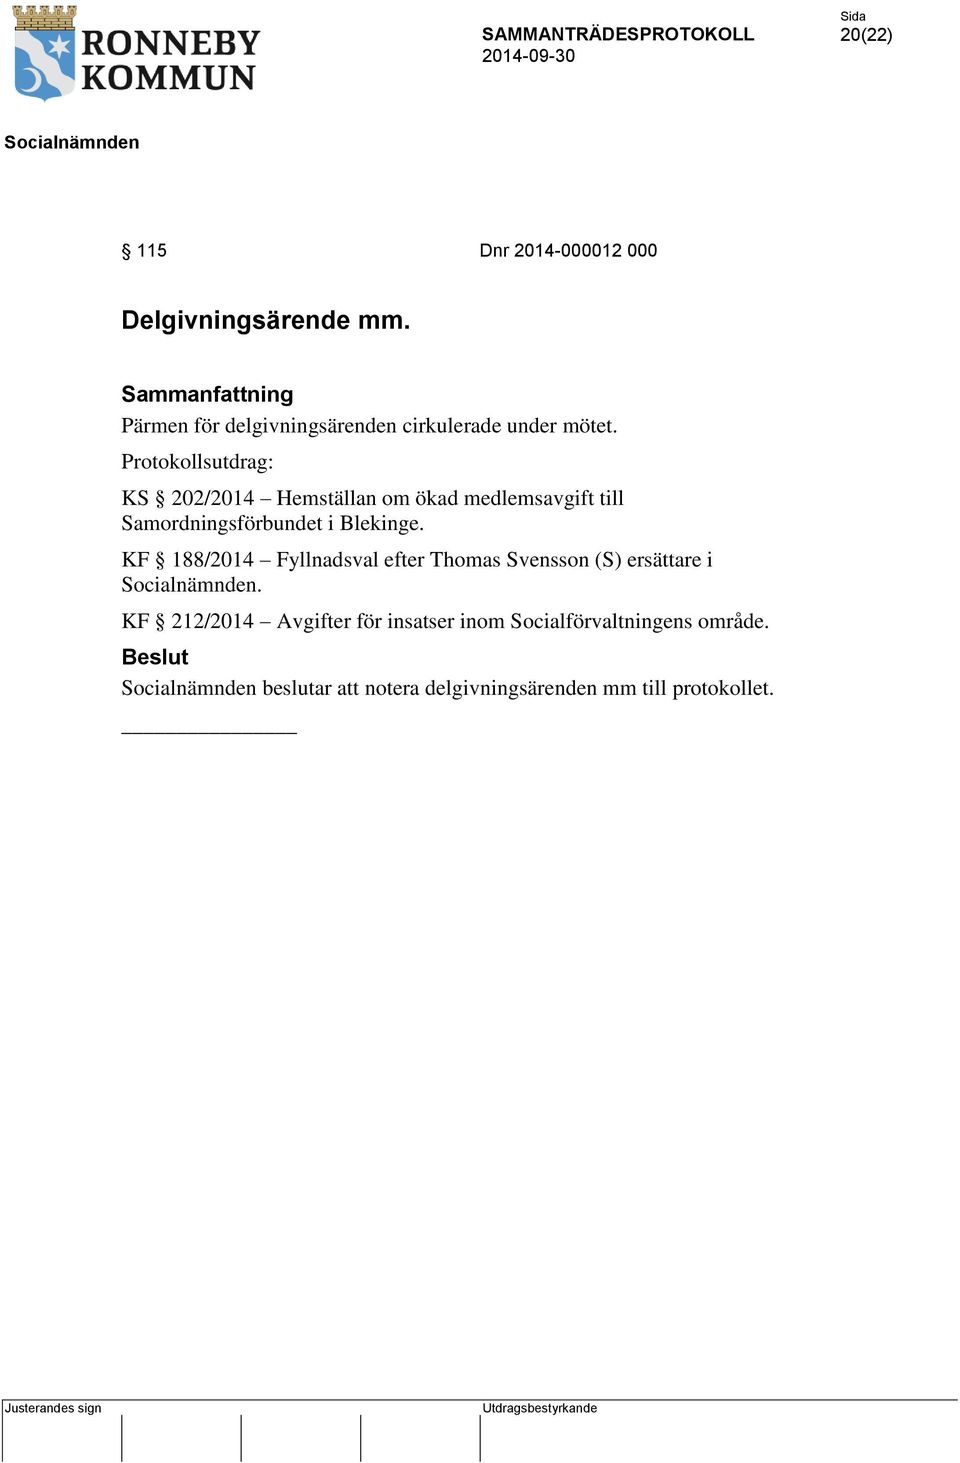 Protokollsutdrag: KS 202/2014 Hemställan om ökad medlemsavgift till Samordningsförbundet i Blekinge.